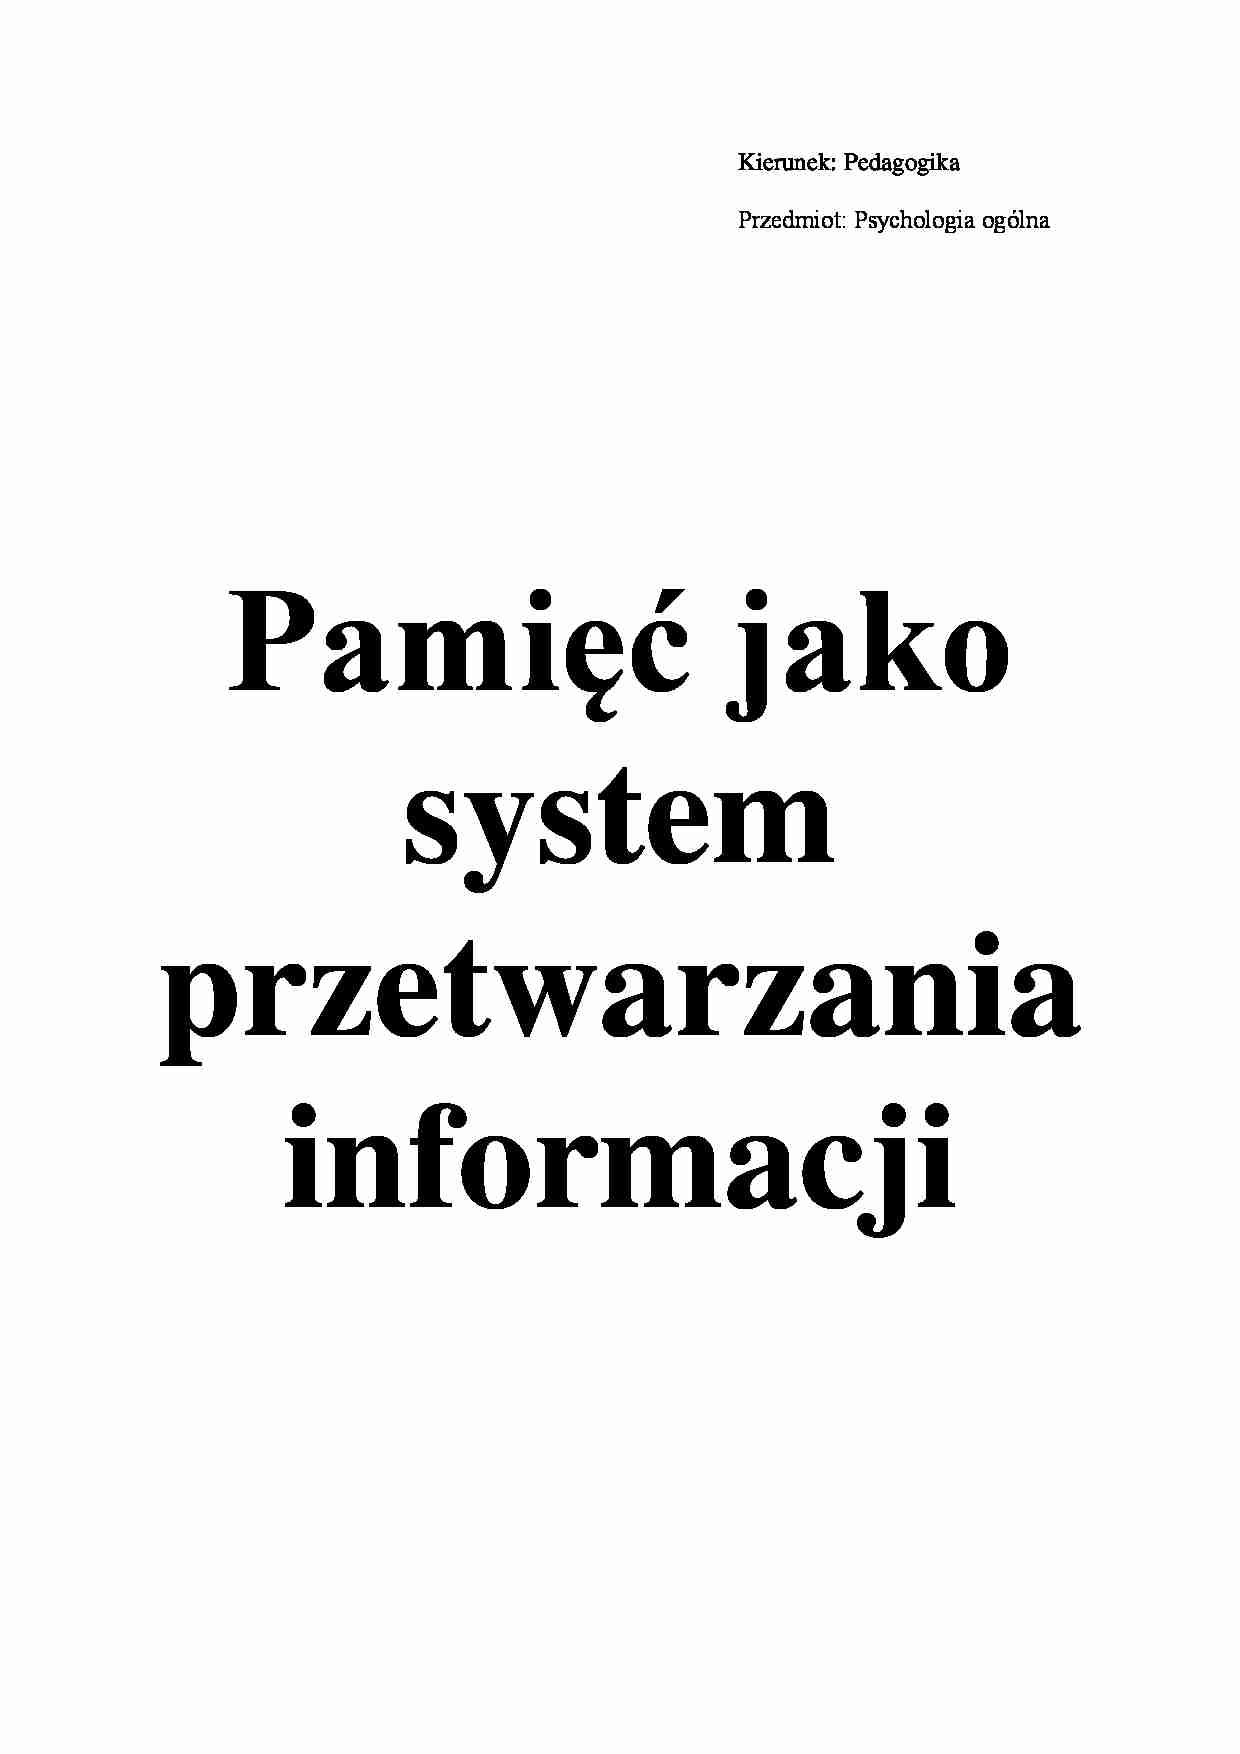 Pamięć jako system przetwarzania informacji - omówienie (sem. I) - strona 1